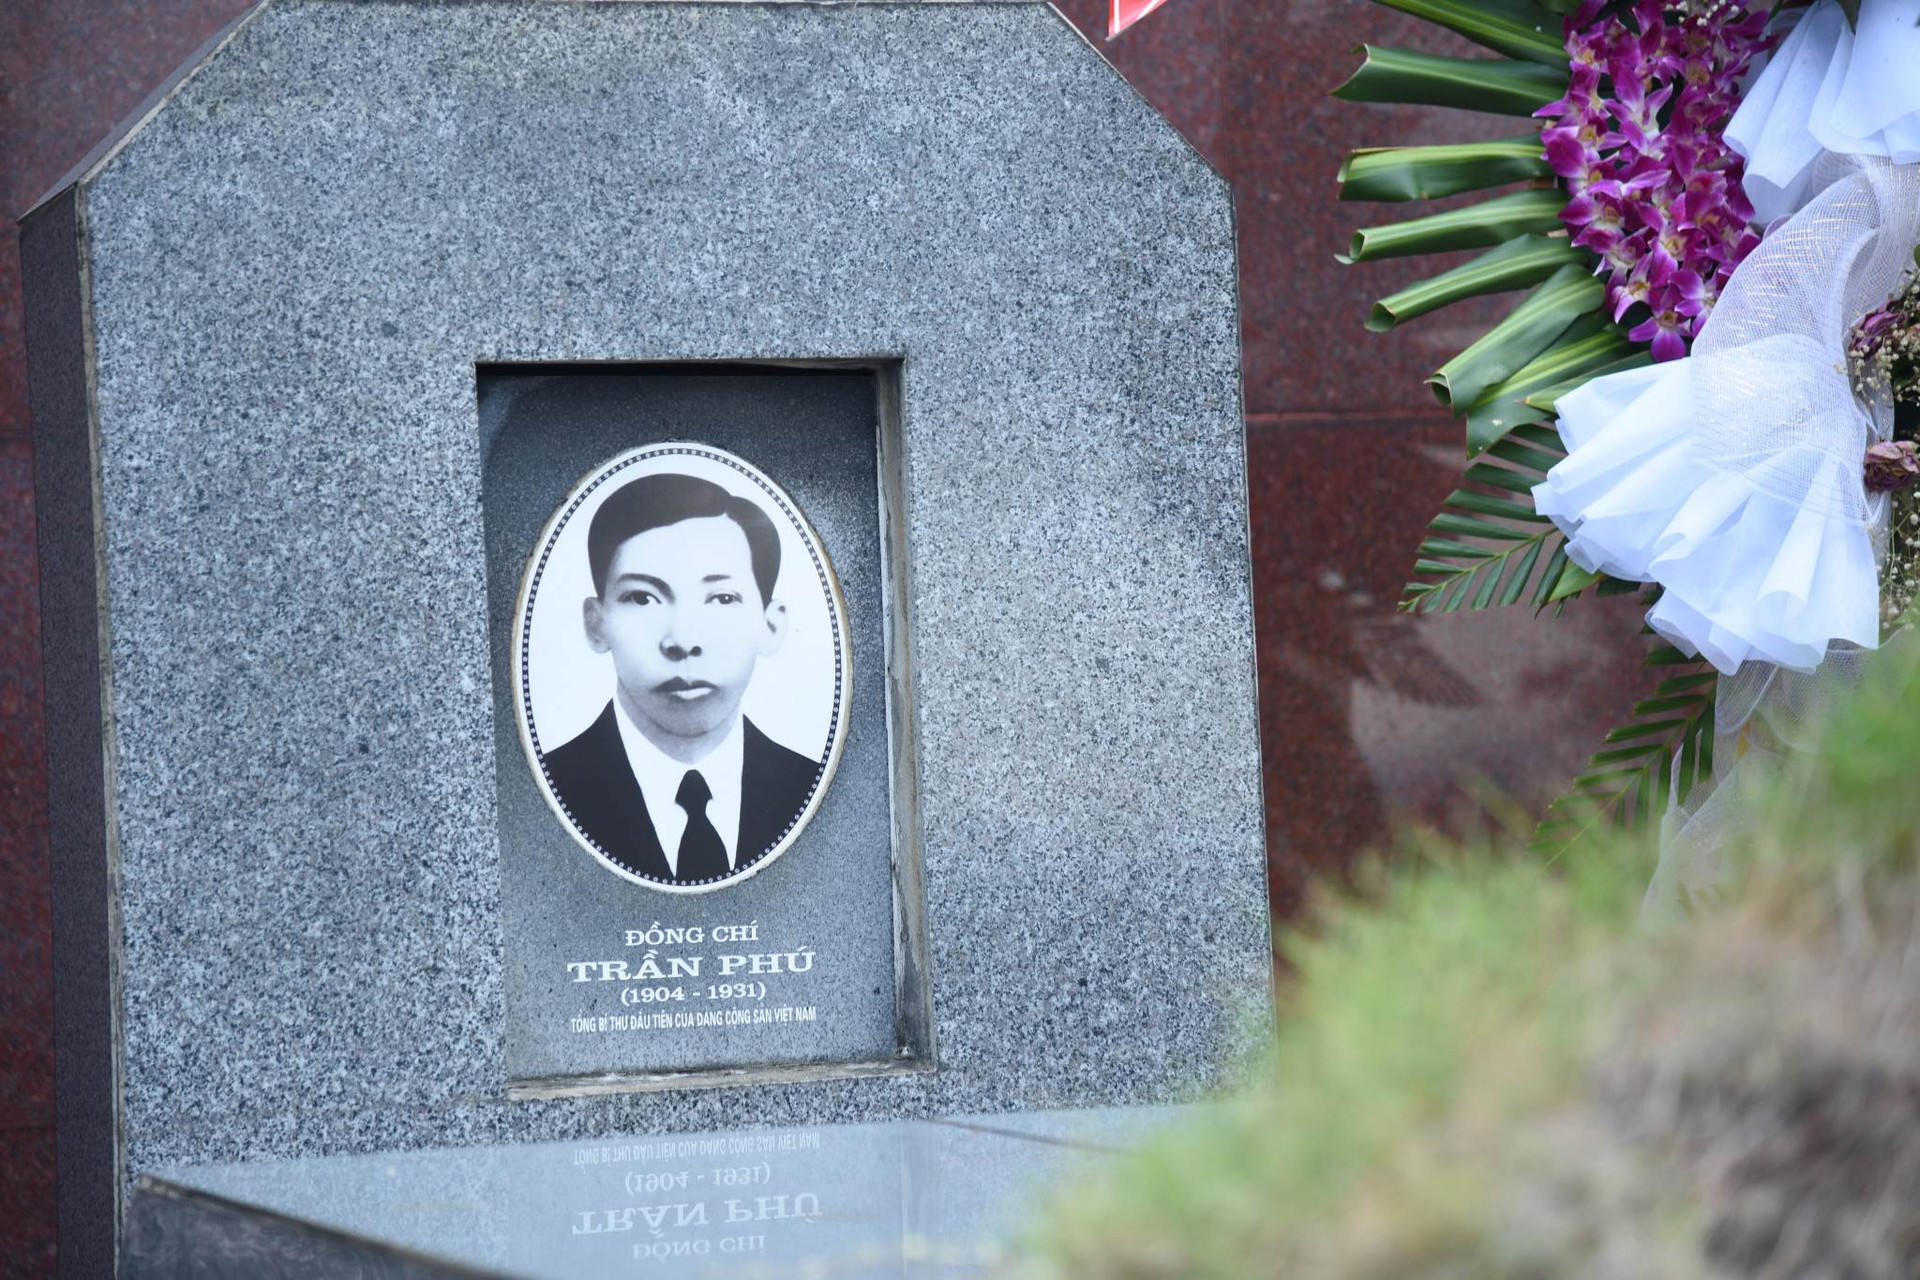 Cố Tổng Bí thư Trần Phú – Người chiến sĩ cộng sản kiên trung, bất khuất